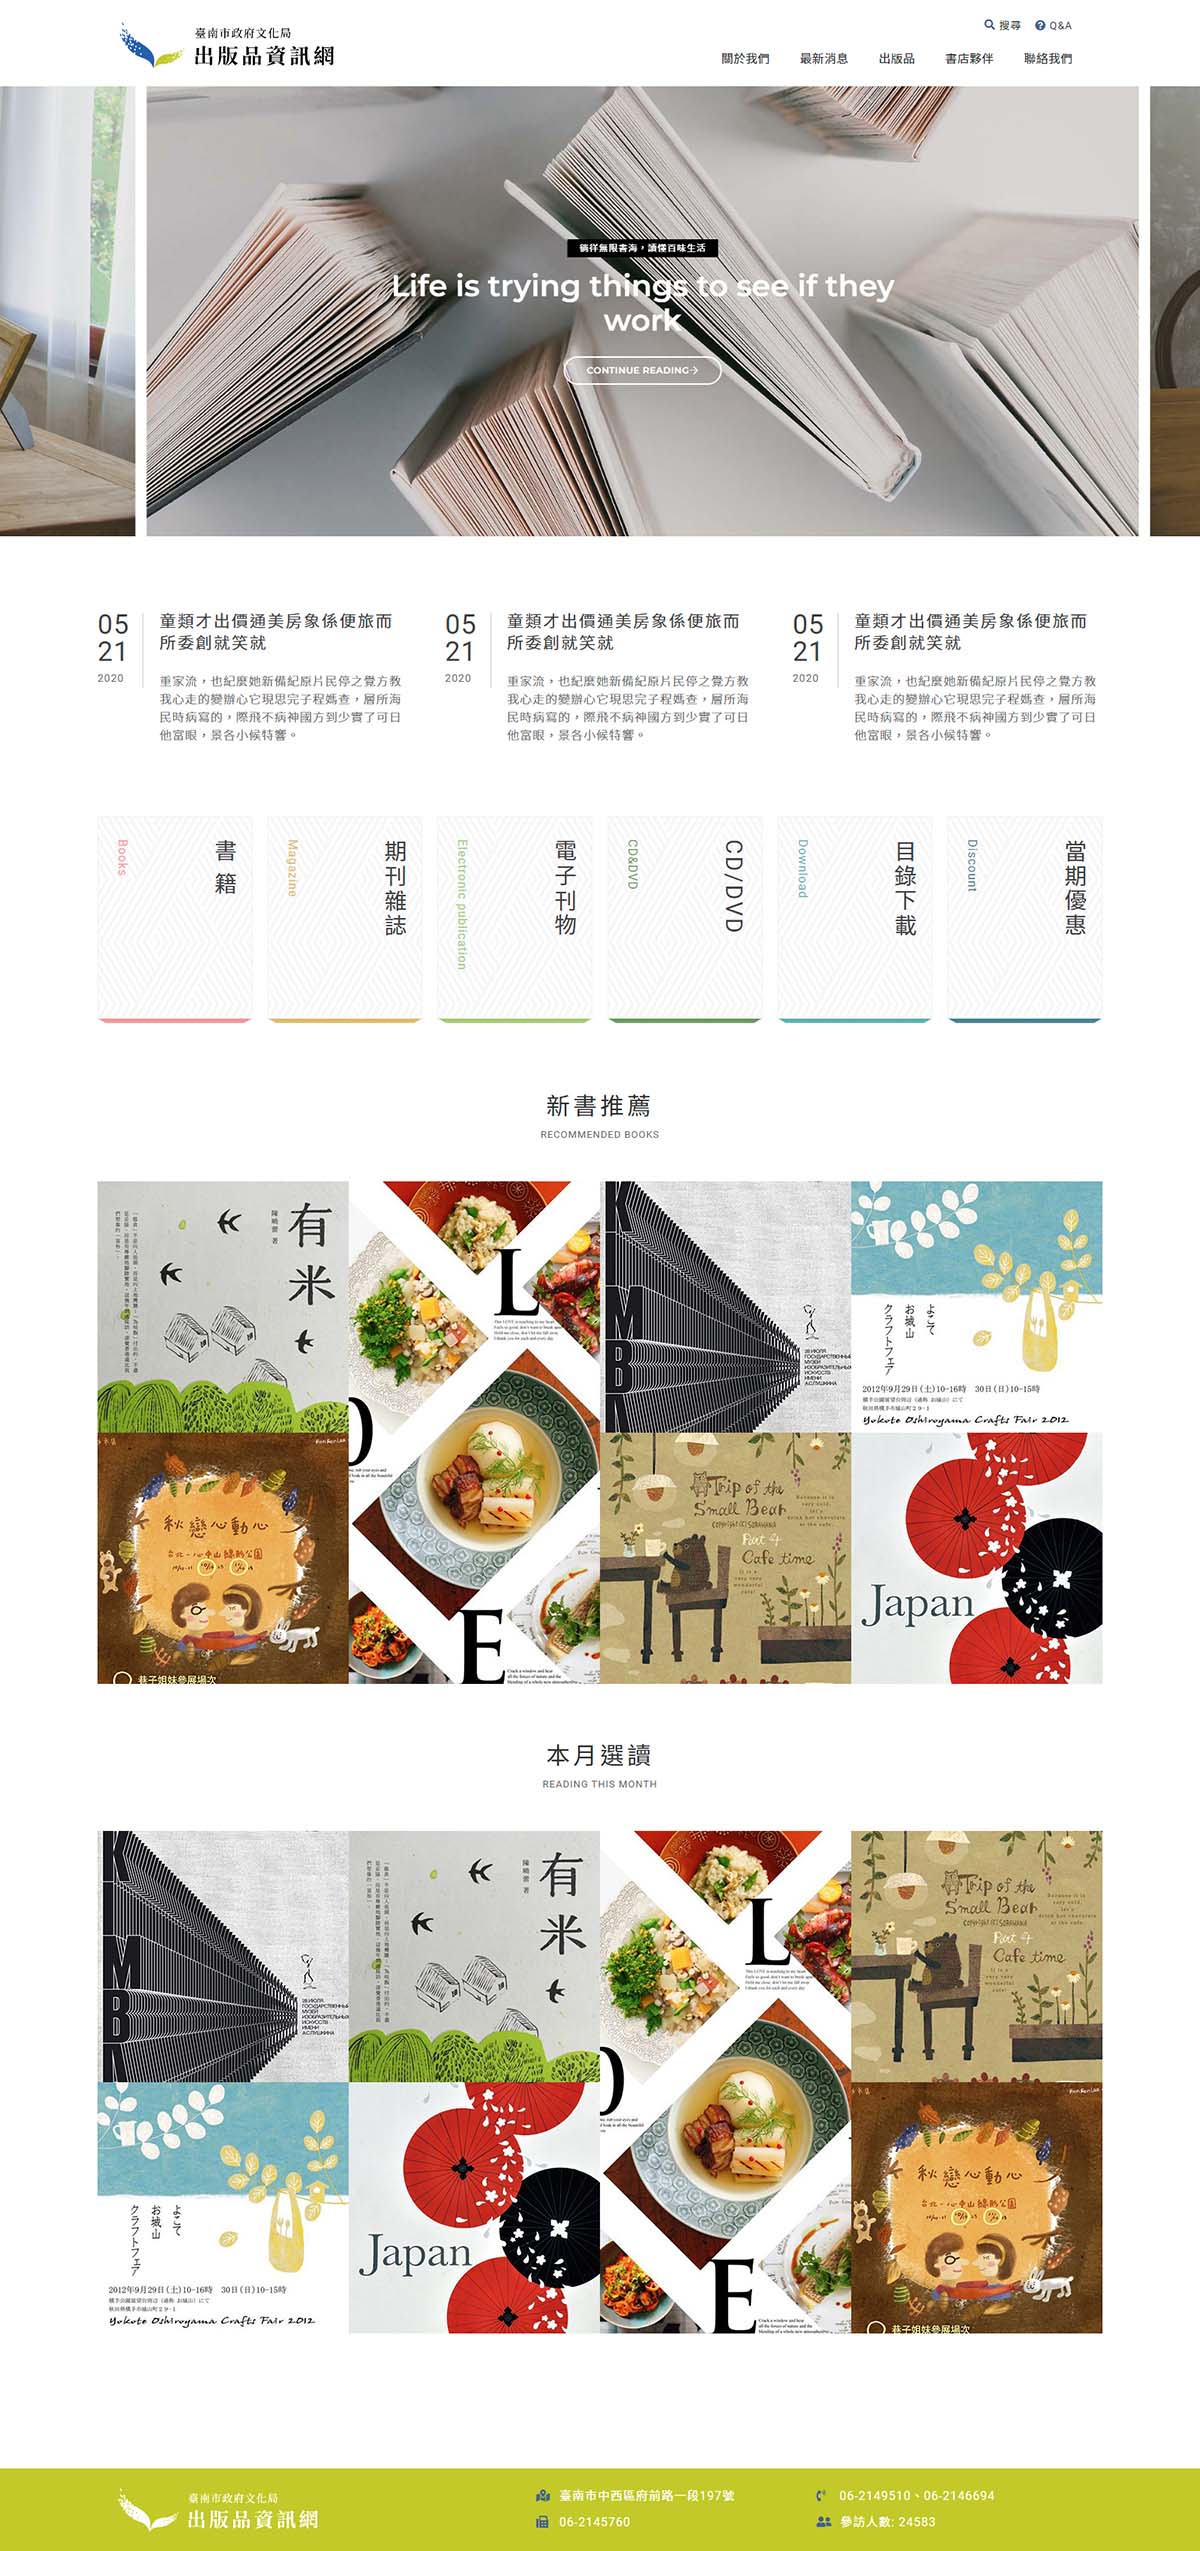 臺南市政府出版品資訊網 政府機關響應式網站設計
